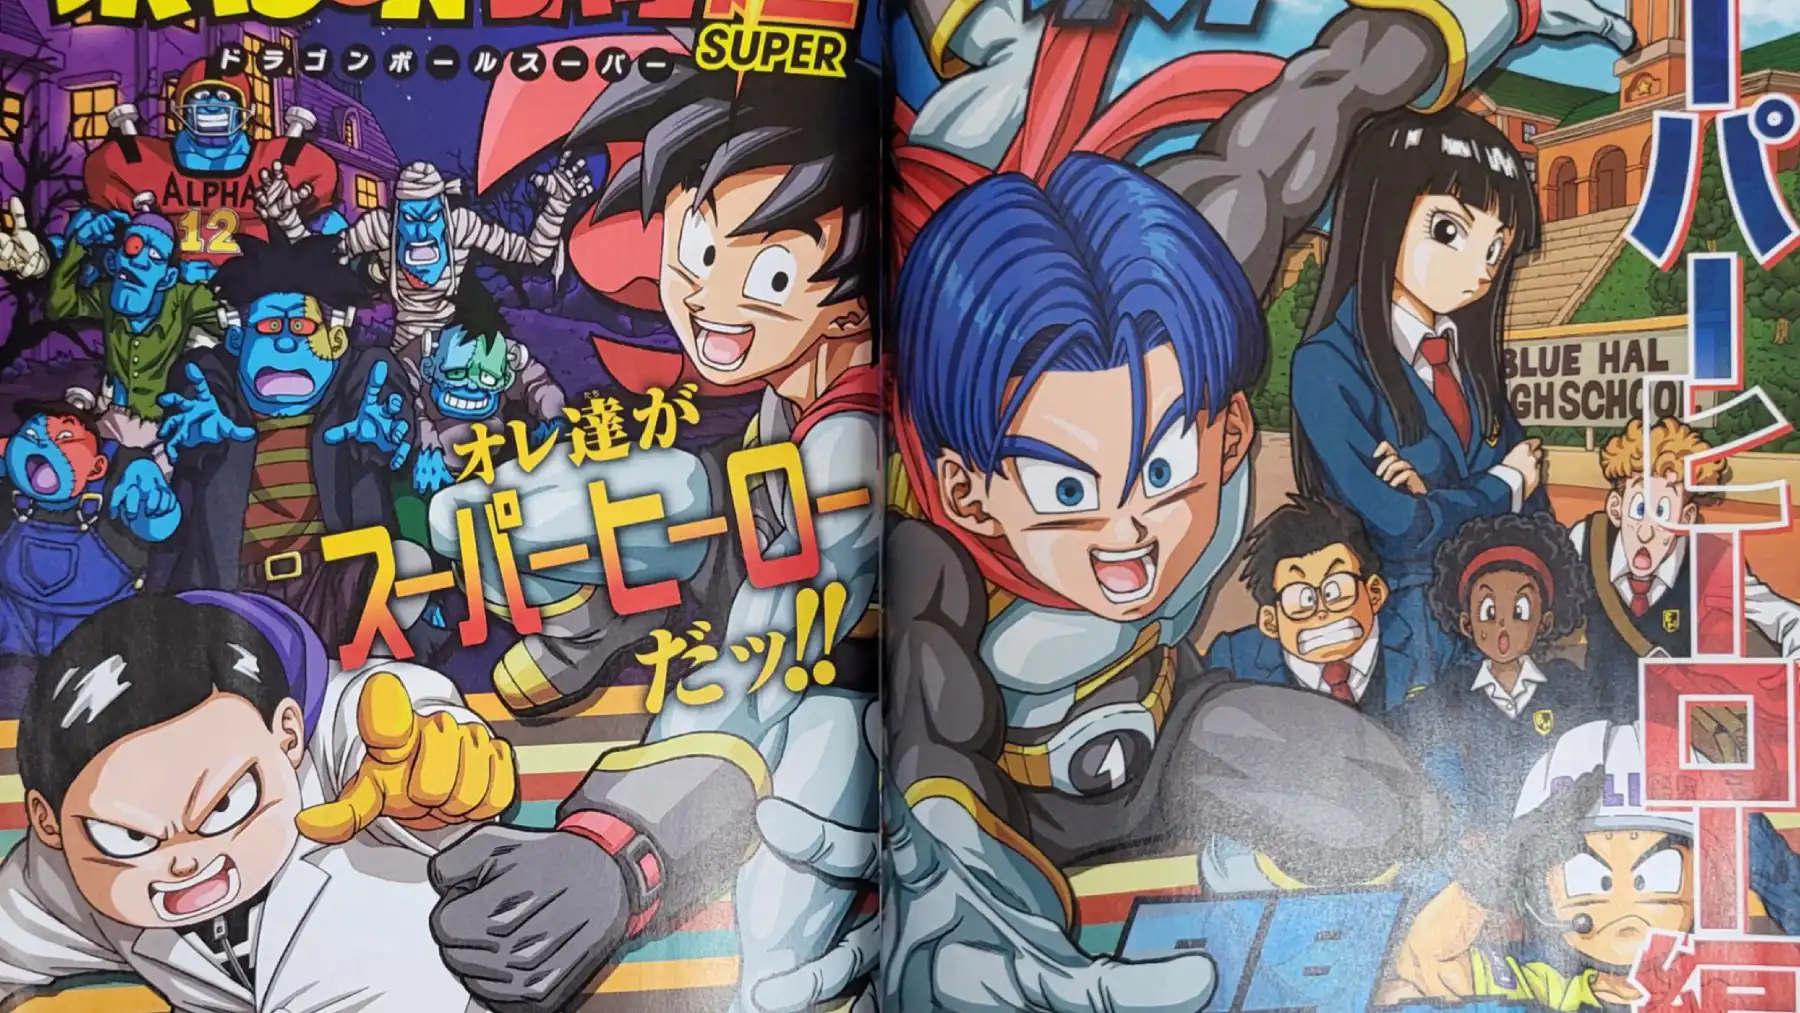 Dragon Ball Super: Publican nuevas imágenes oficiales del capítulo